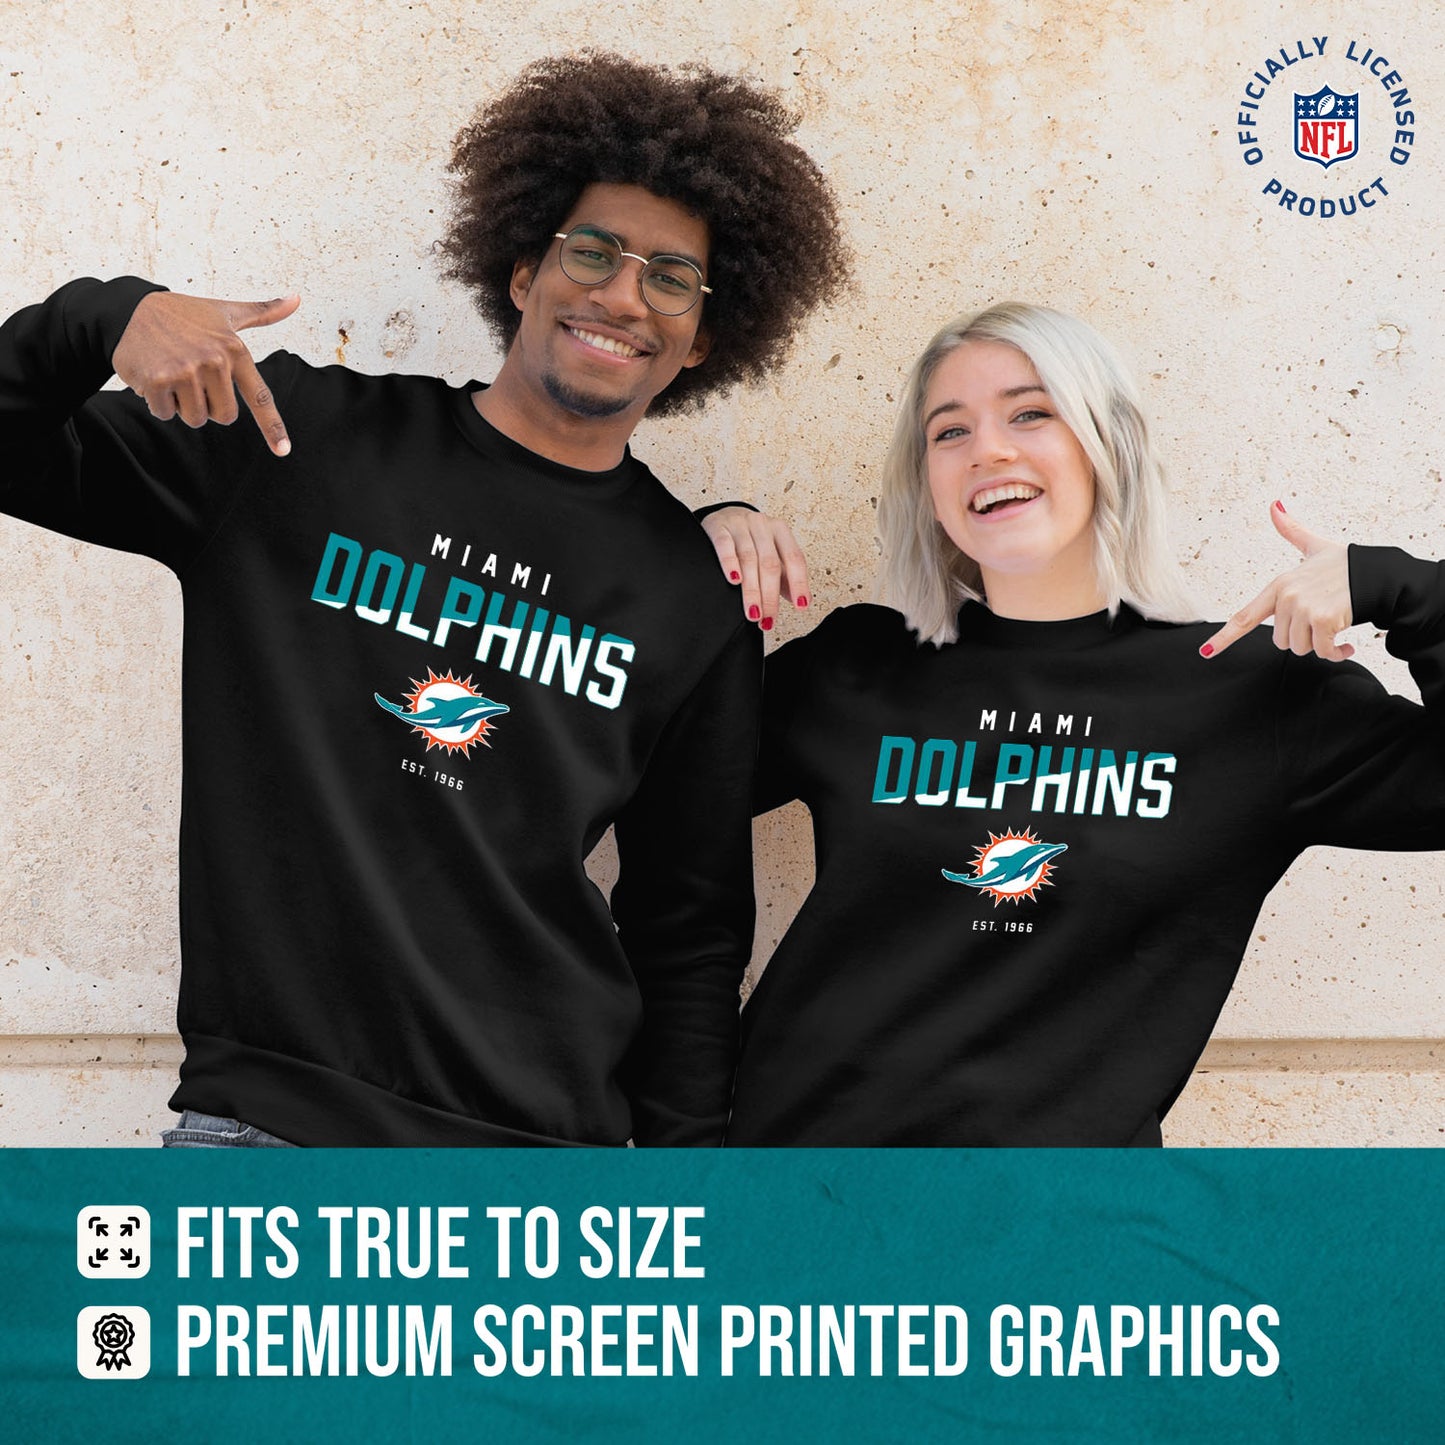 Miami Dolphins Adult NFL Diagonal Fade Color Block Crewneck Sweatshirt - Black